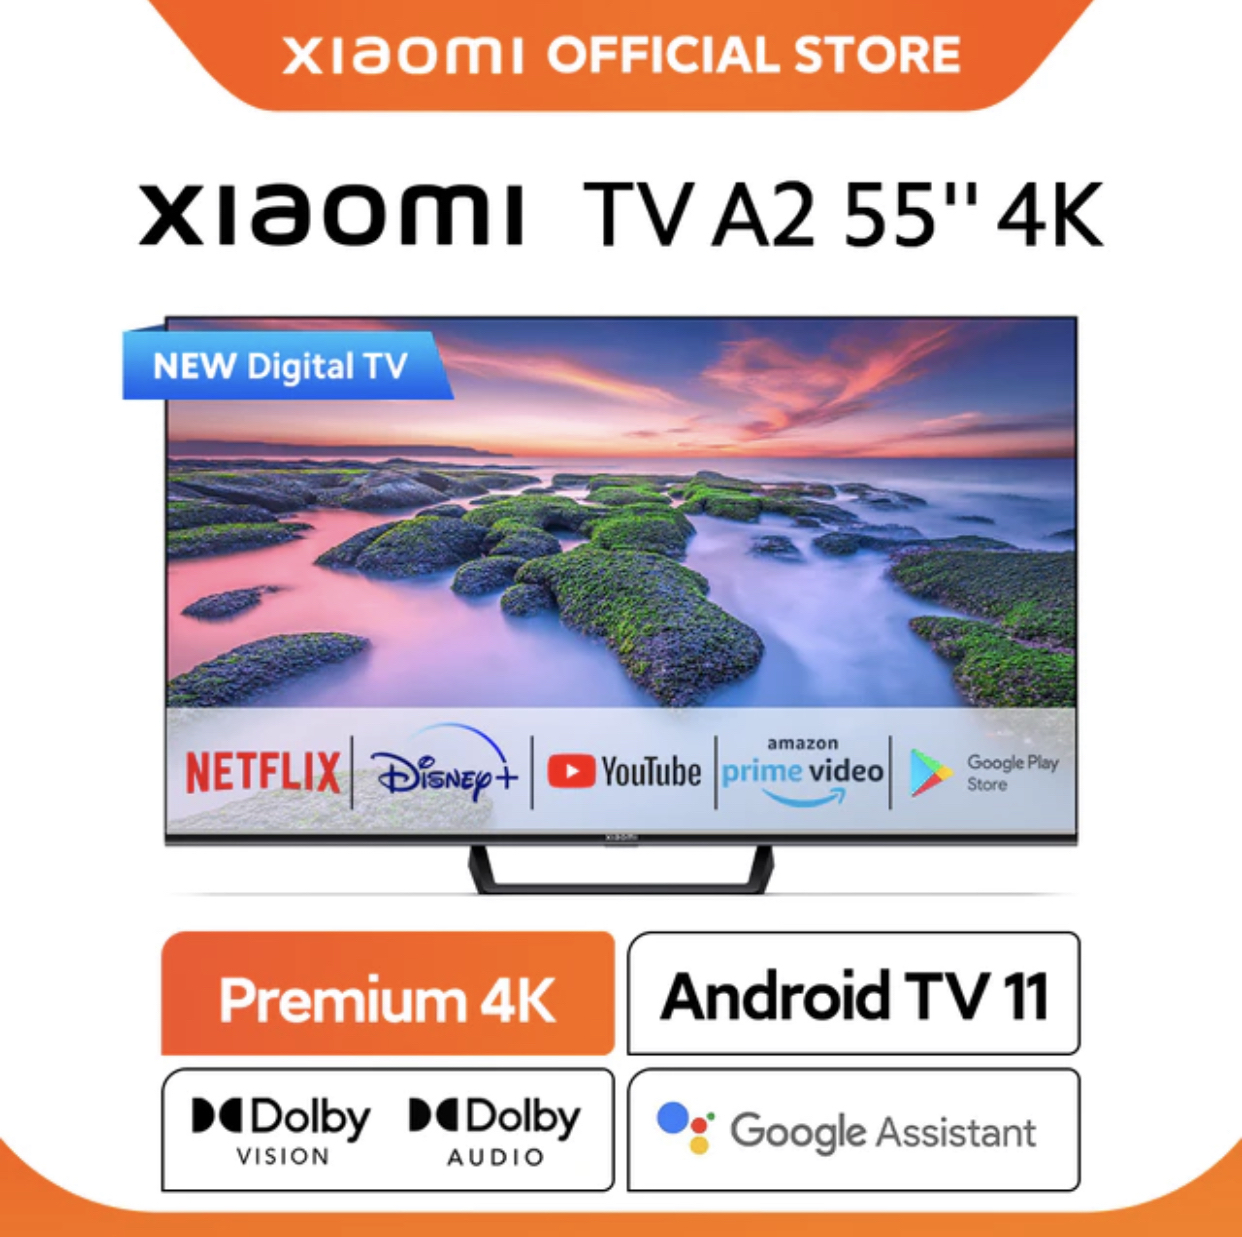 23. Xiaomi TV A2 55" 4K